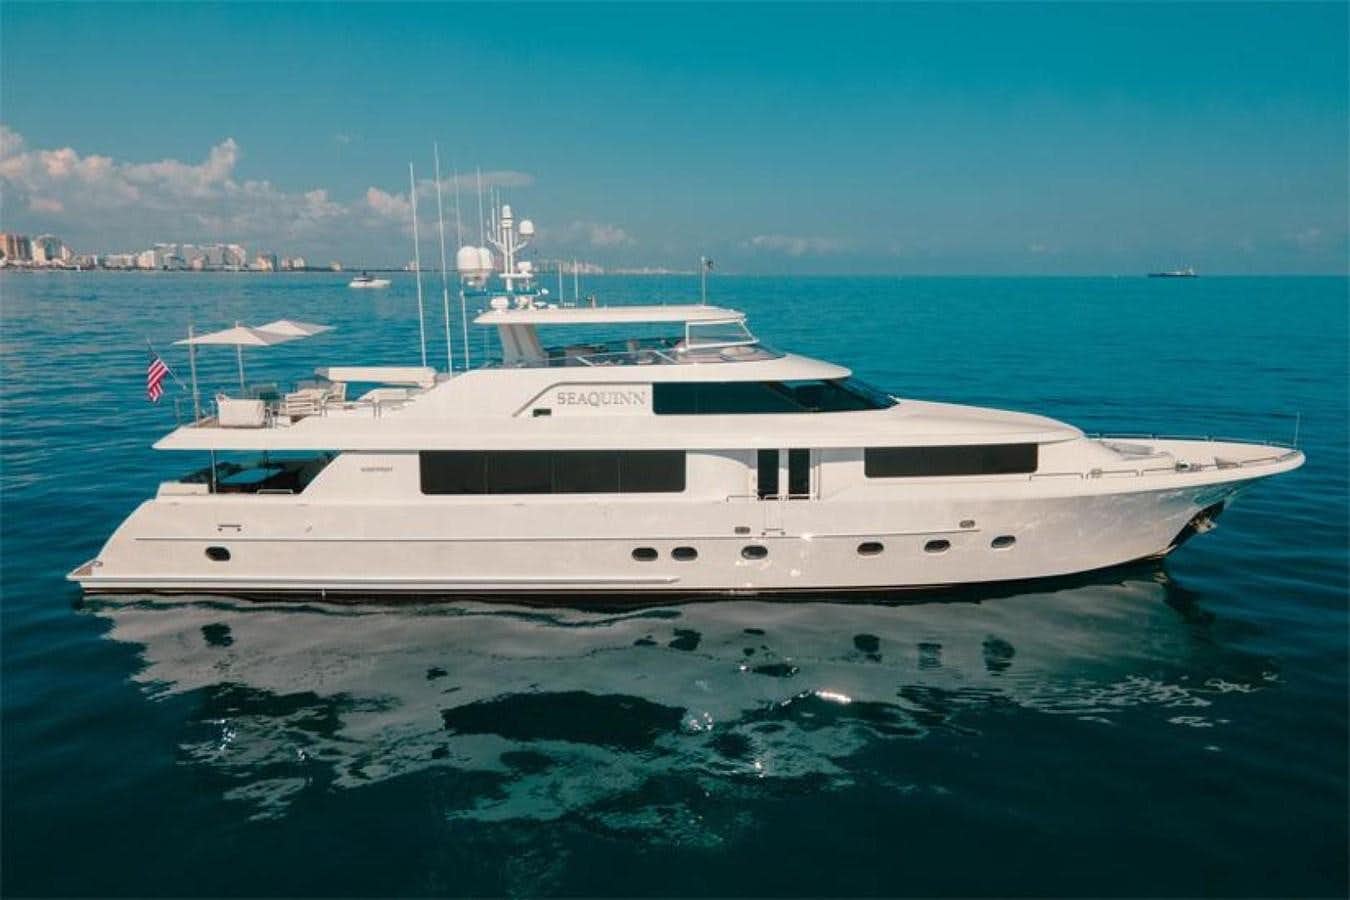 Seaquinn
Yacht for Sale